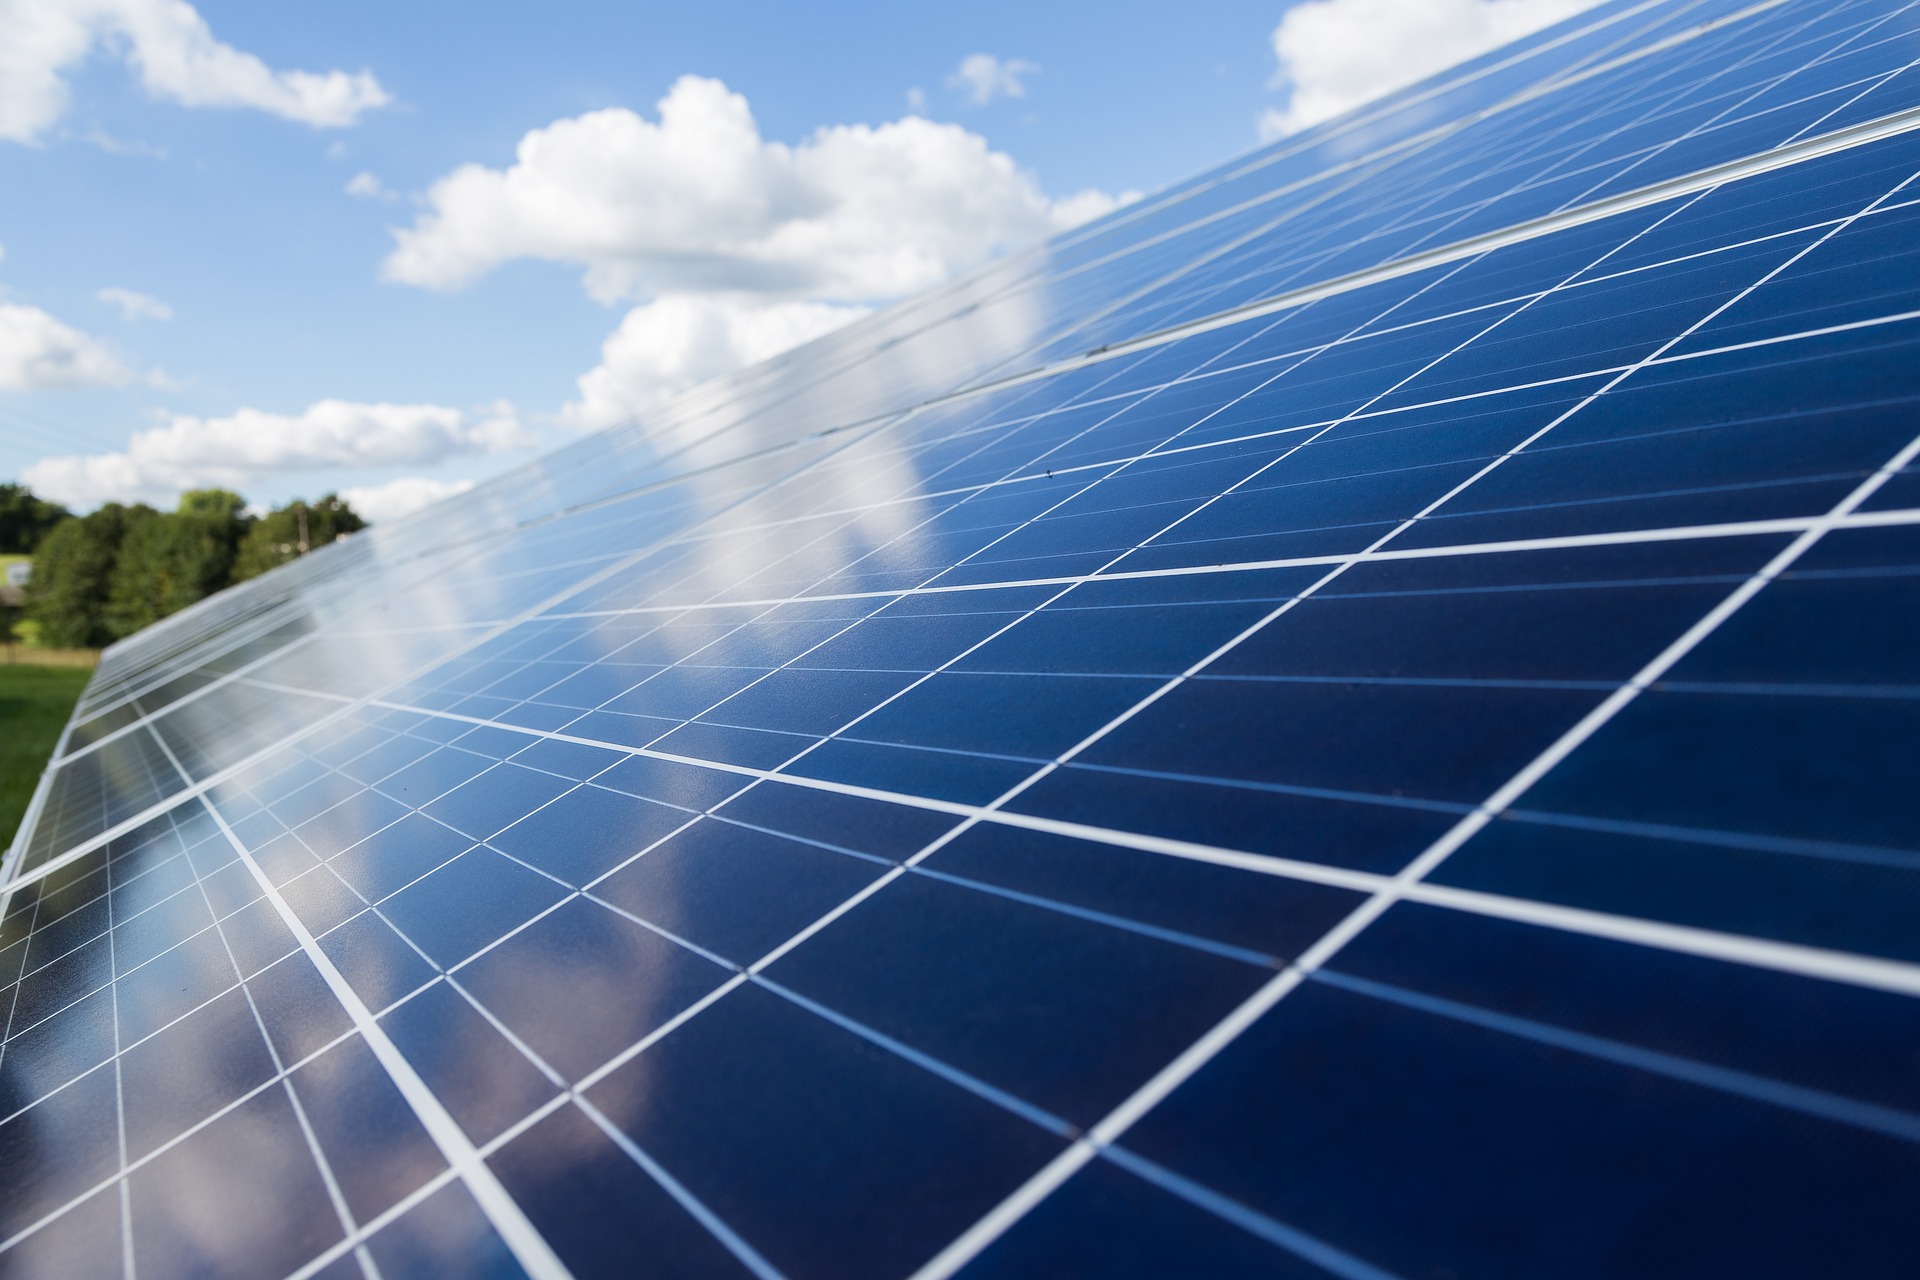 Le panneau solaire hybride : photovoltaïque & thermique